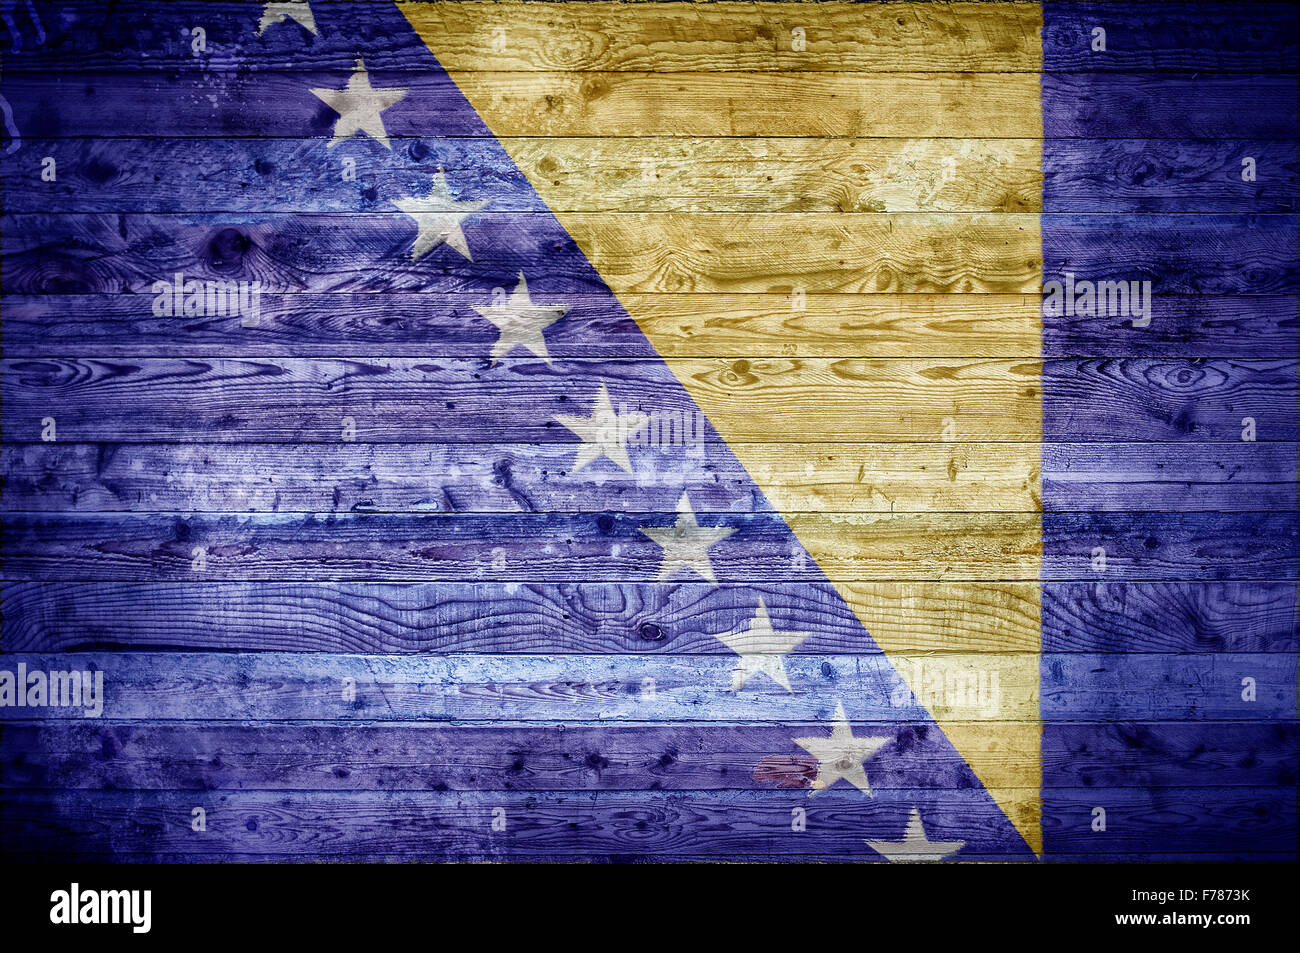 Ein bandtypischen Hintergrundbild der Flagge von Bosnien und Herzegowina auf Holzbrettern einer Wand oder Boden gemalt. Stockfoto